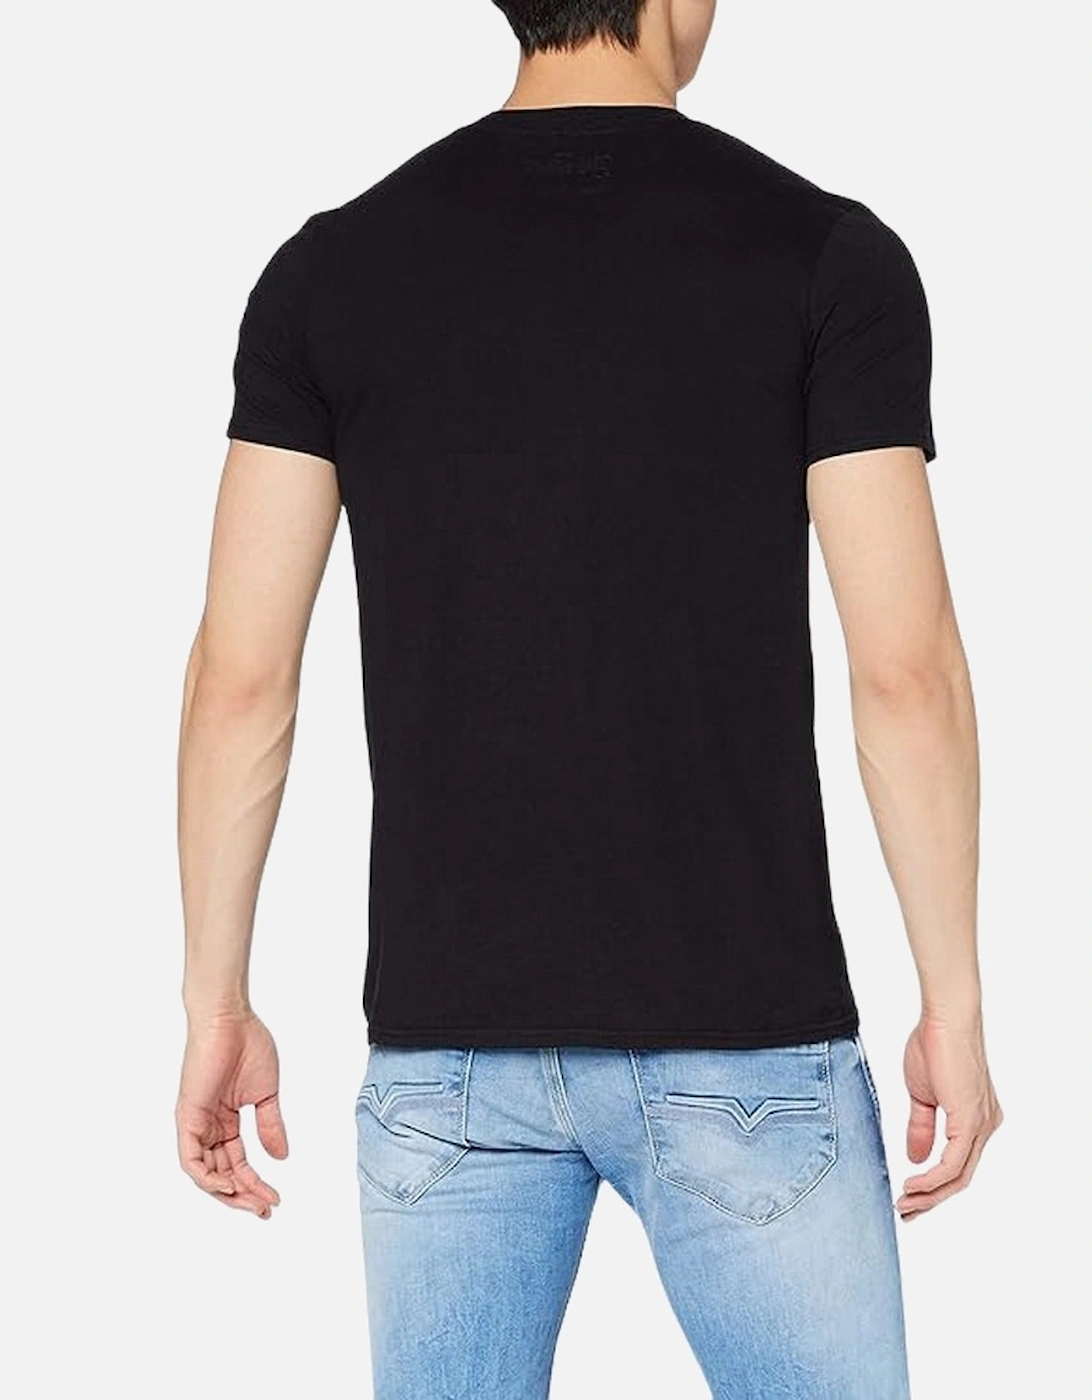 Unisex Adult Soundwaves Cotton T-Shirt